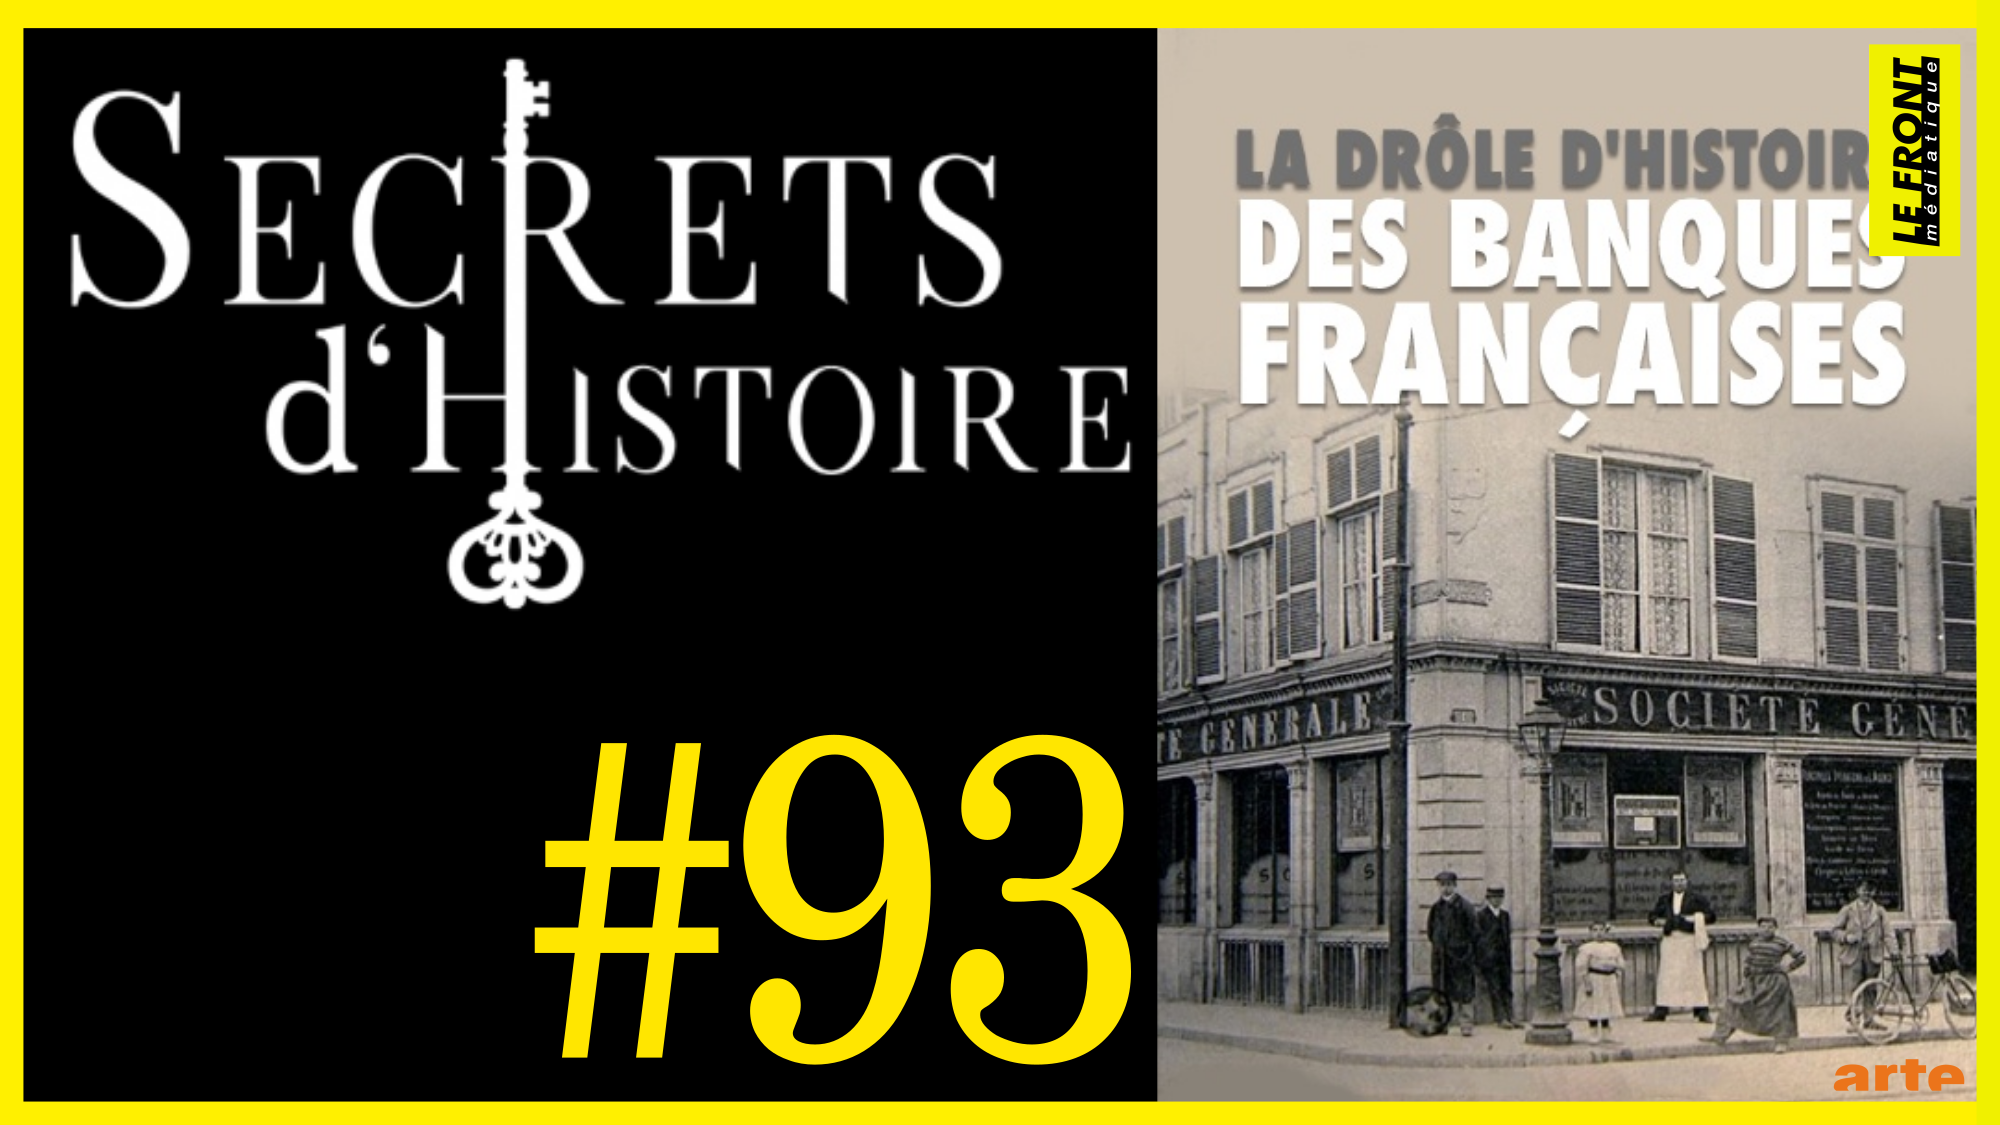 🗝 DOCU INCONTOURNABLE #93 🎥 La drôle d’histoire des banques françaises 📆 2013 ⏱ 84min